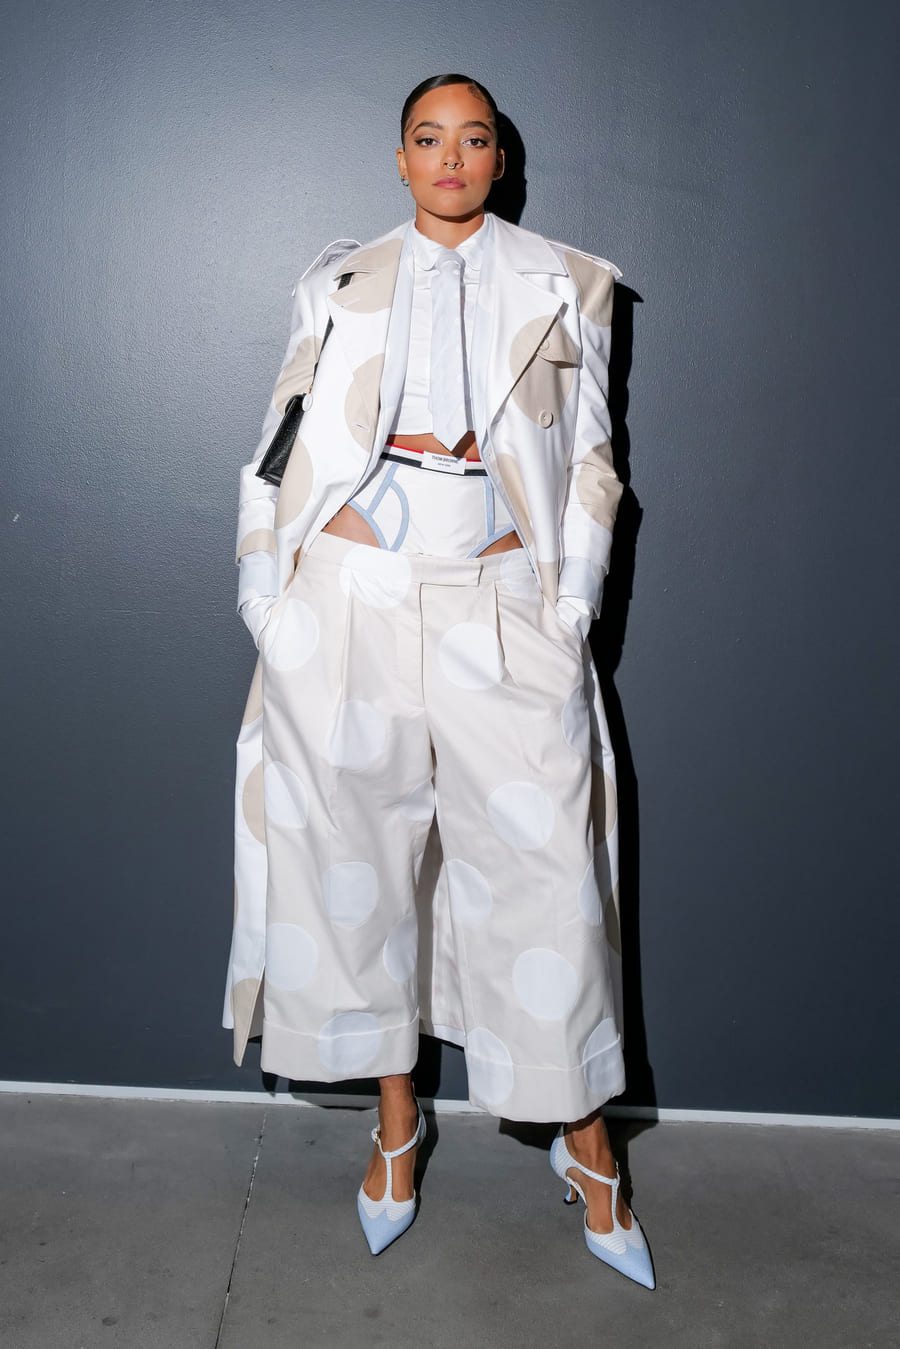 Quintessa Swindell au défilé Thom Browne automne-hiver 2023-2024 à la Fashion Week de New York.